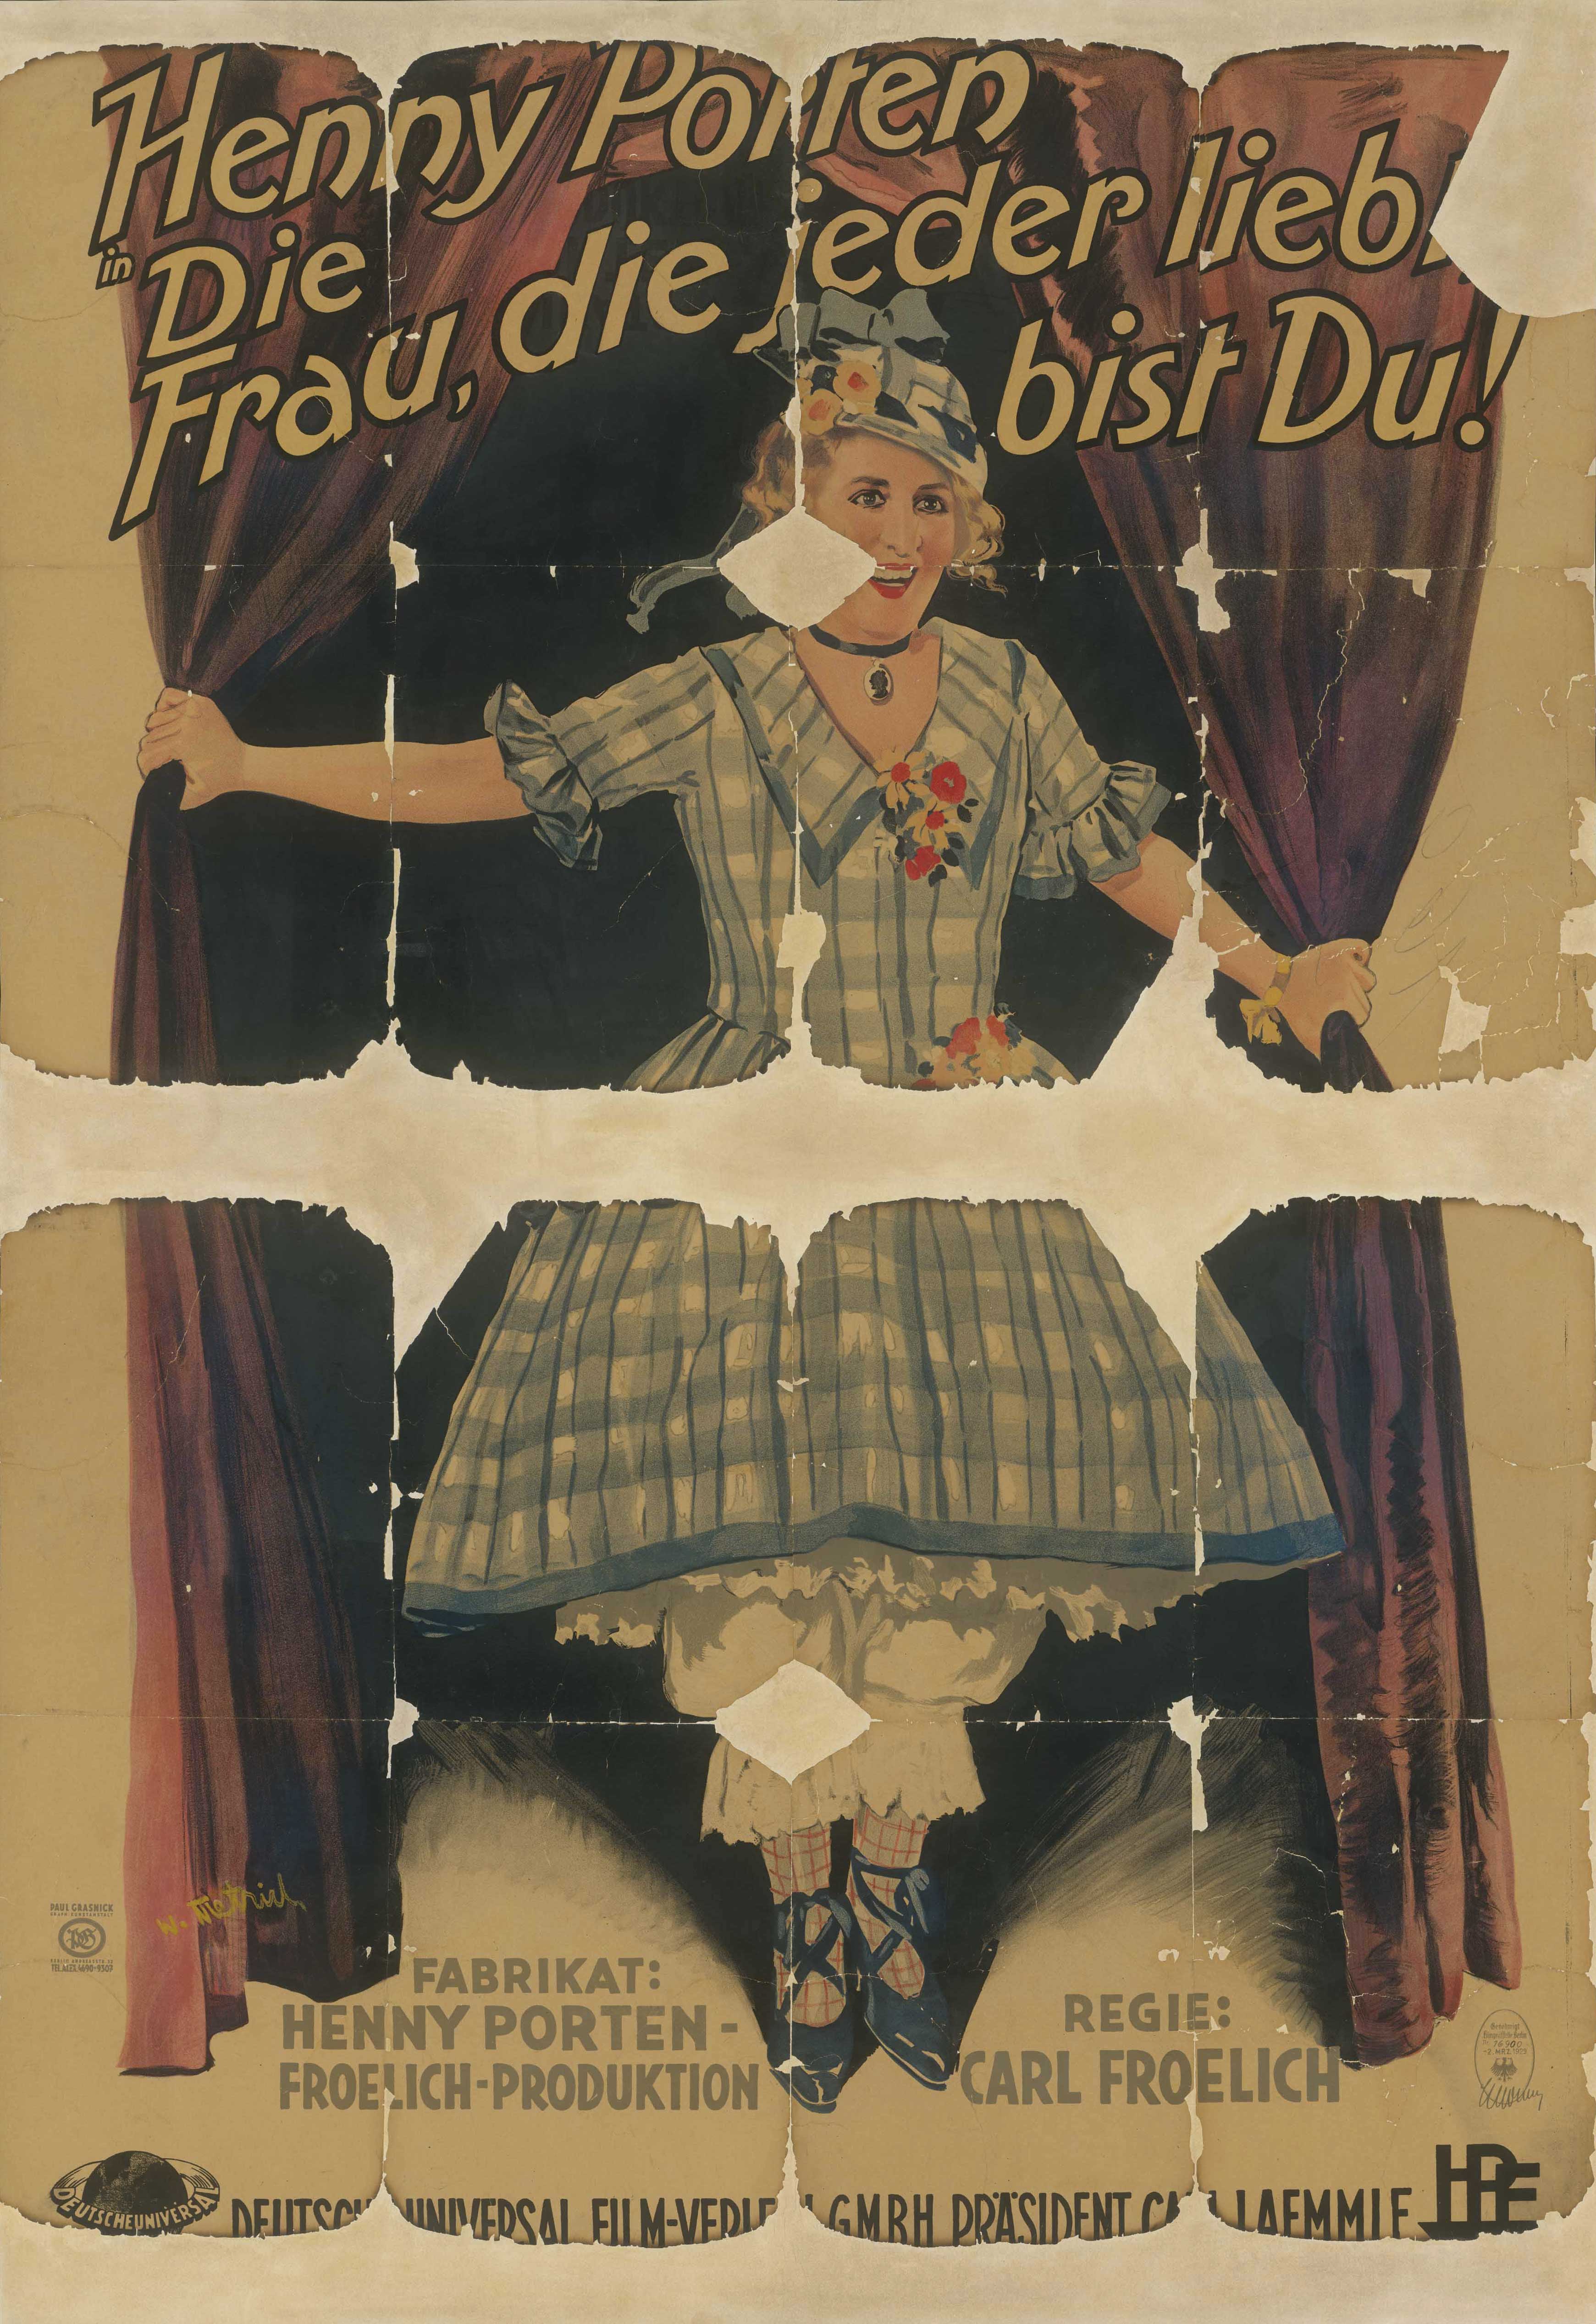 Filmplakat für Die Frau, die jeder liebt, bist Du, Deutschland 1928/1929)